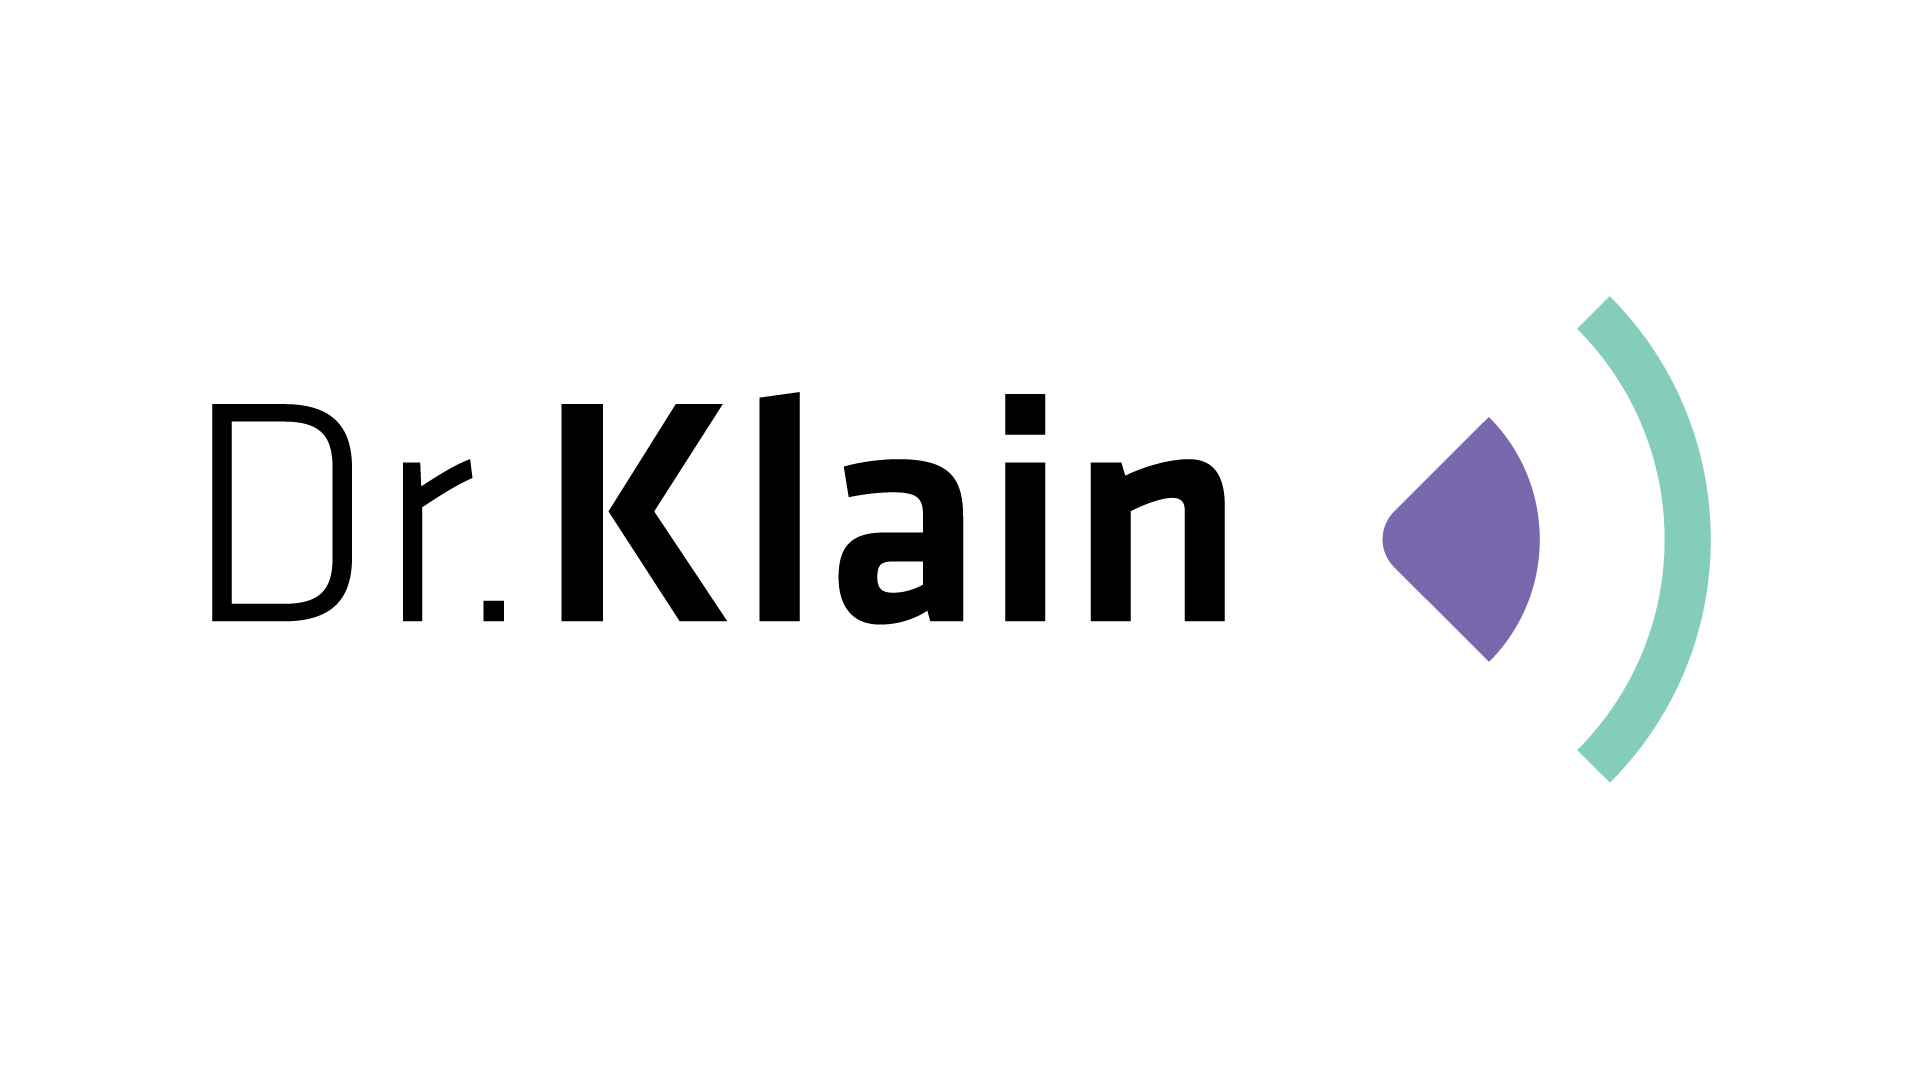 Dr. Klain